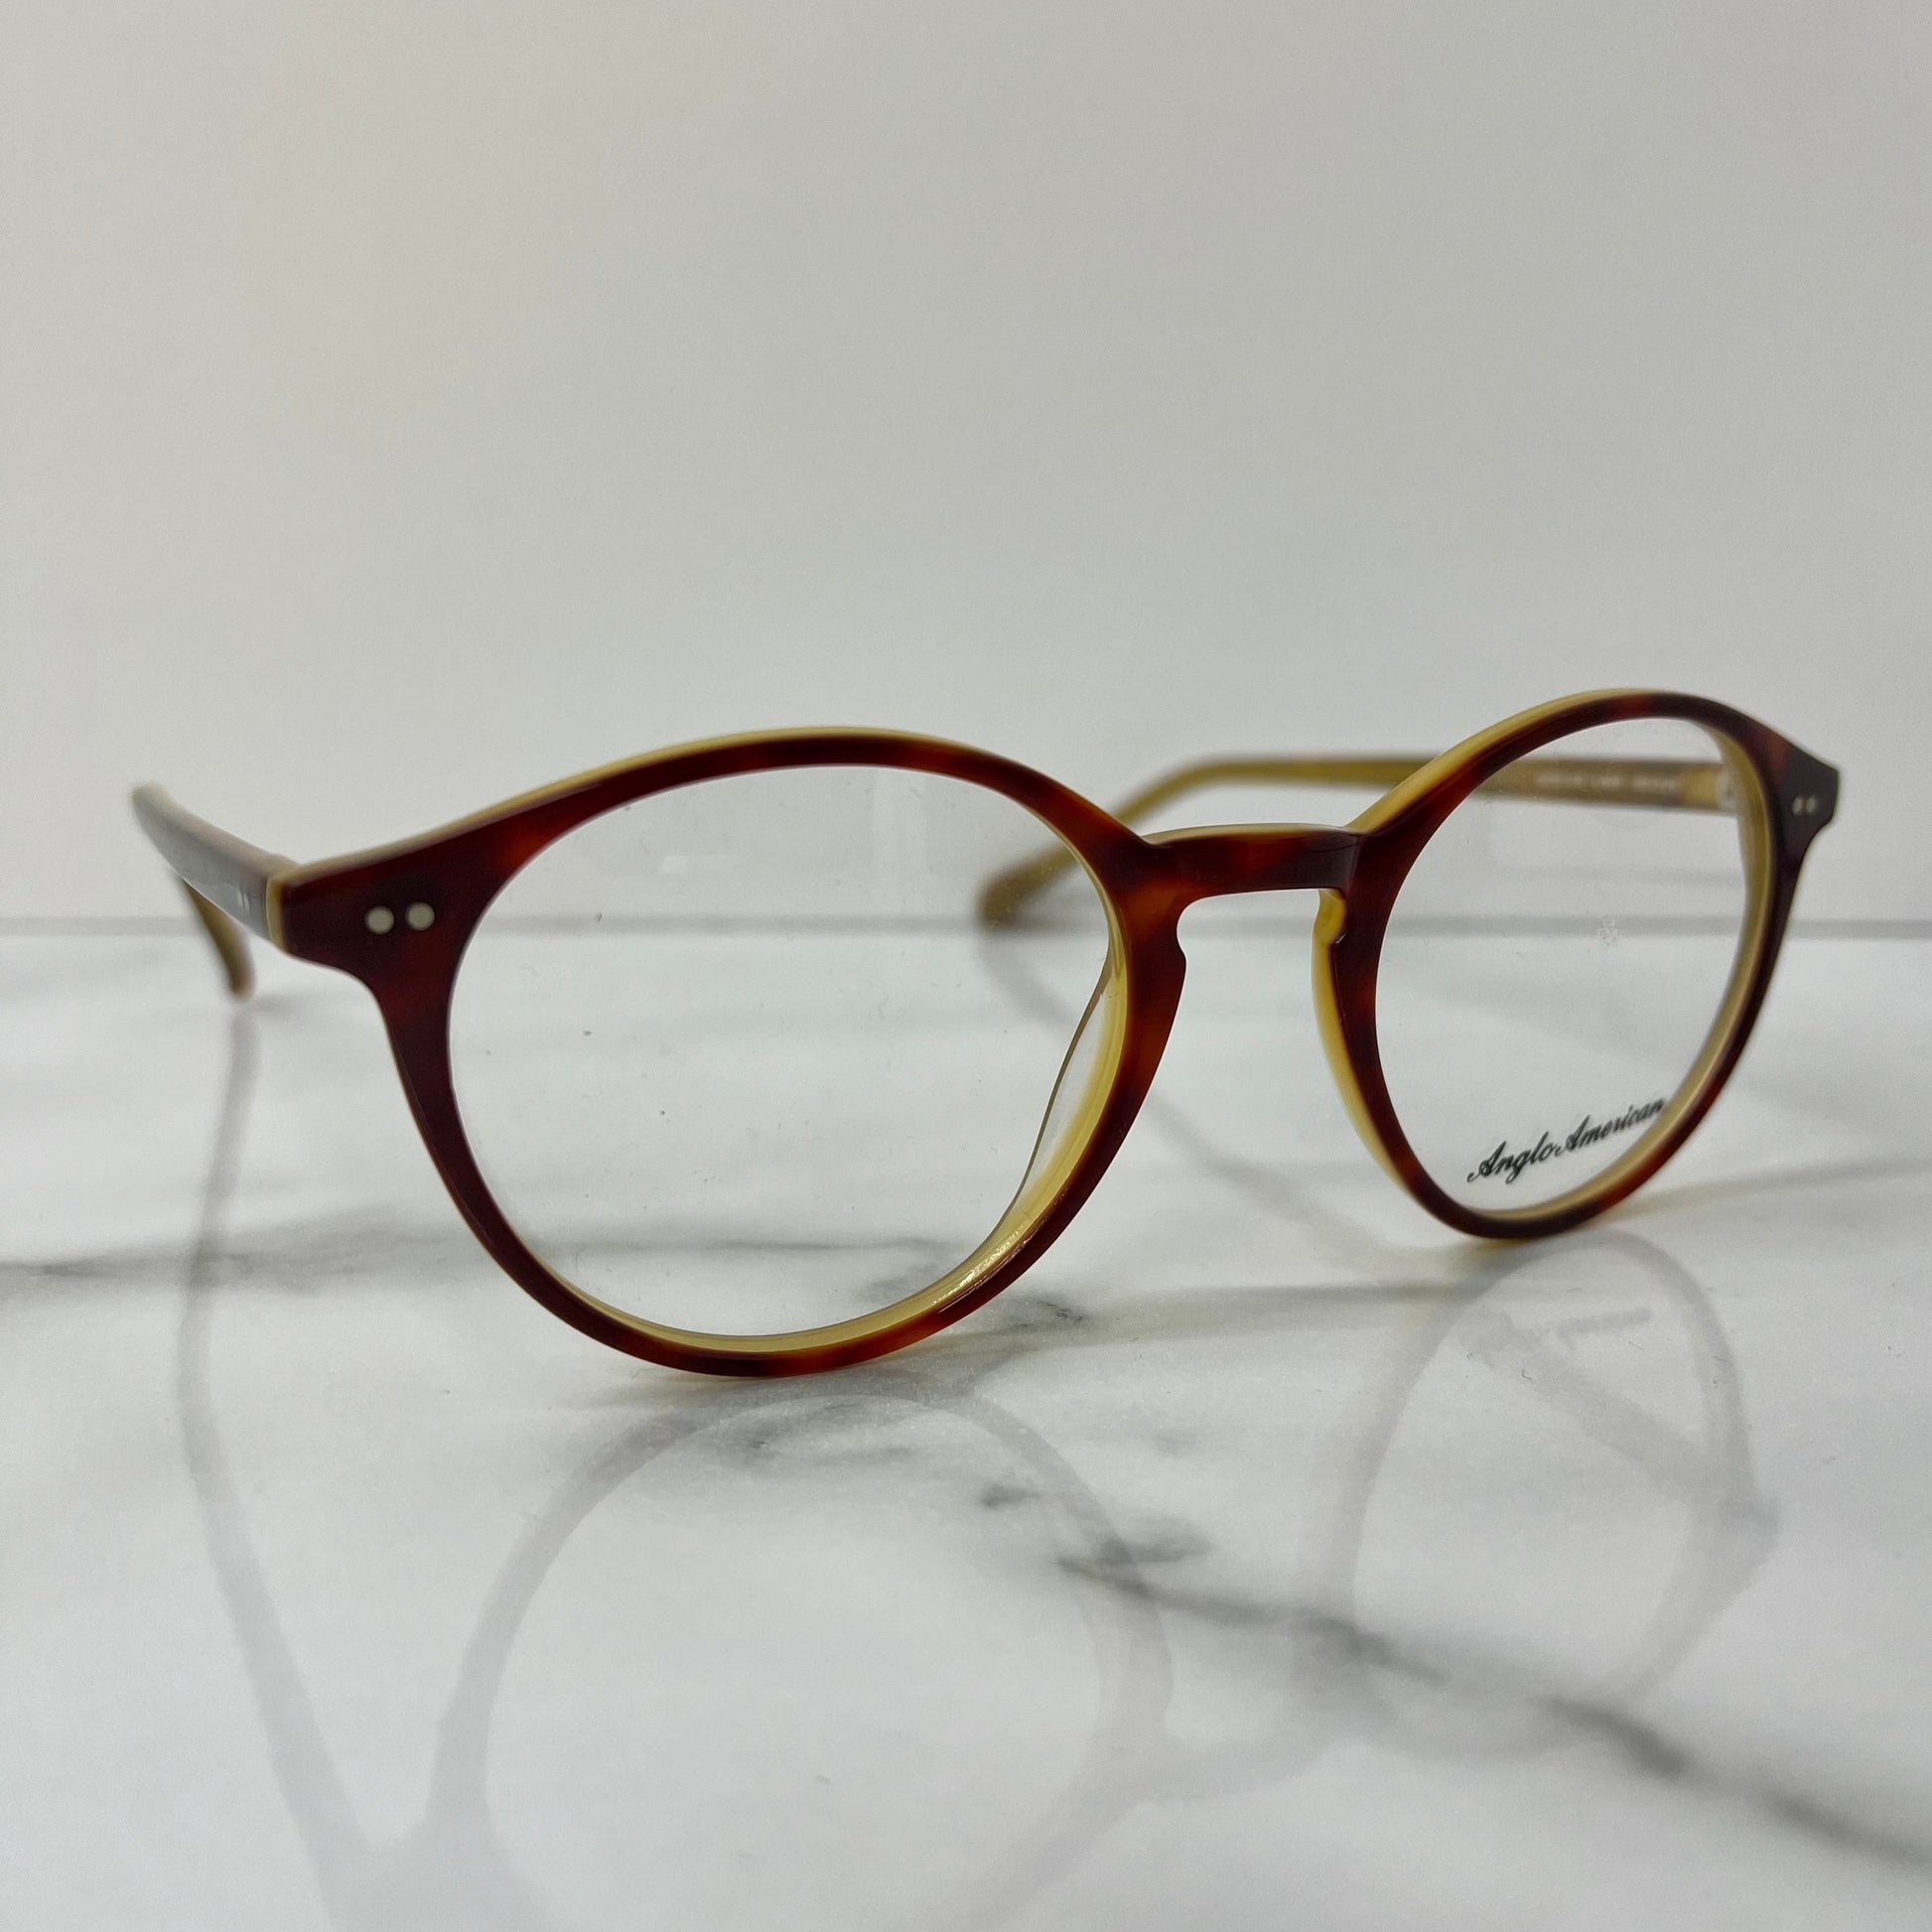 Anglo American 406 Glasses Frames Brown Gold 50mm England Designer Eyeglasses